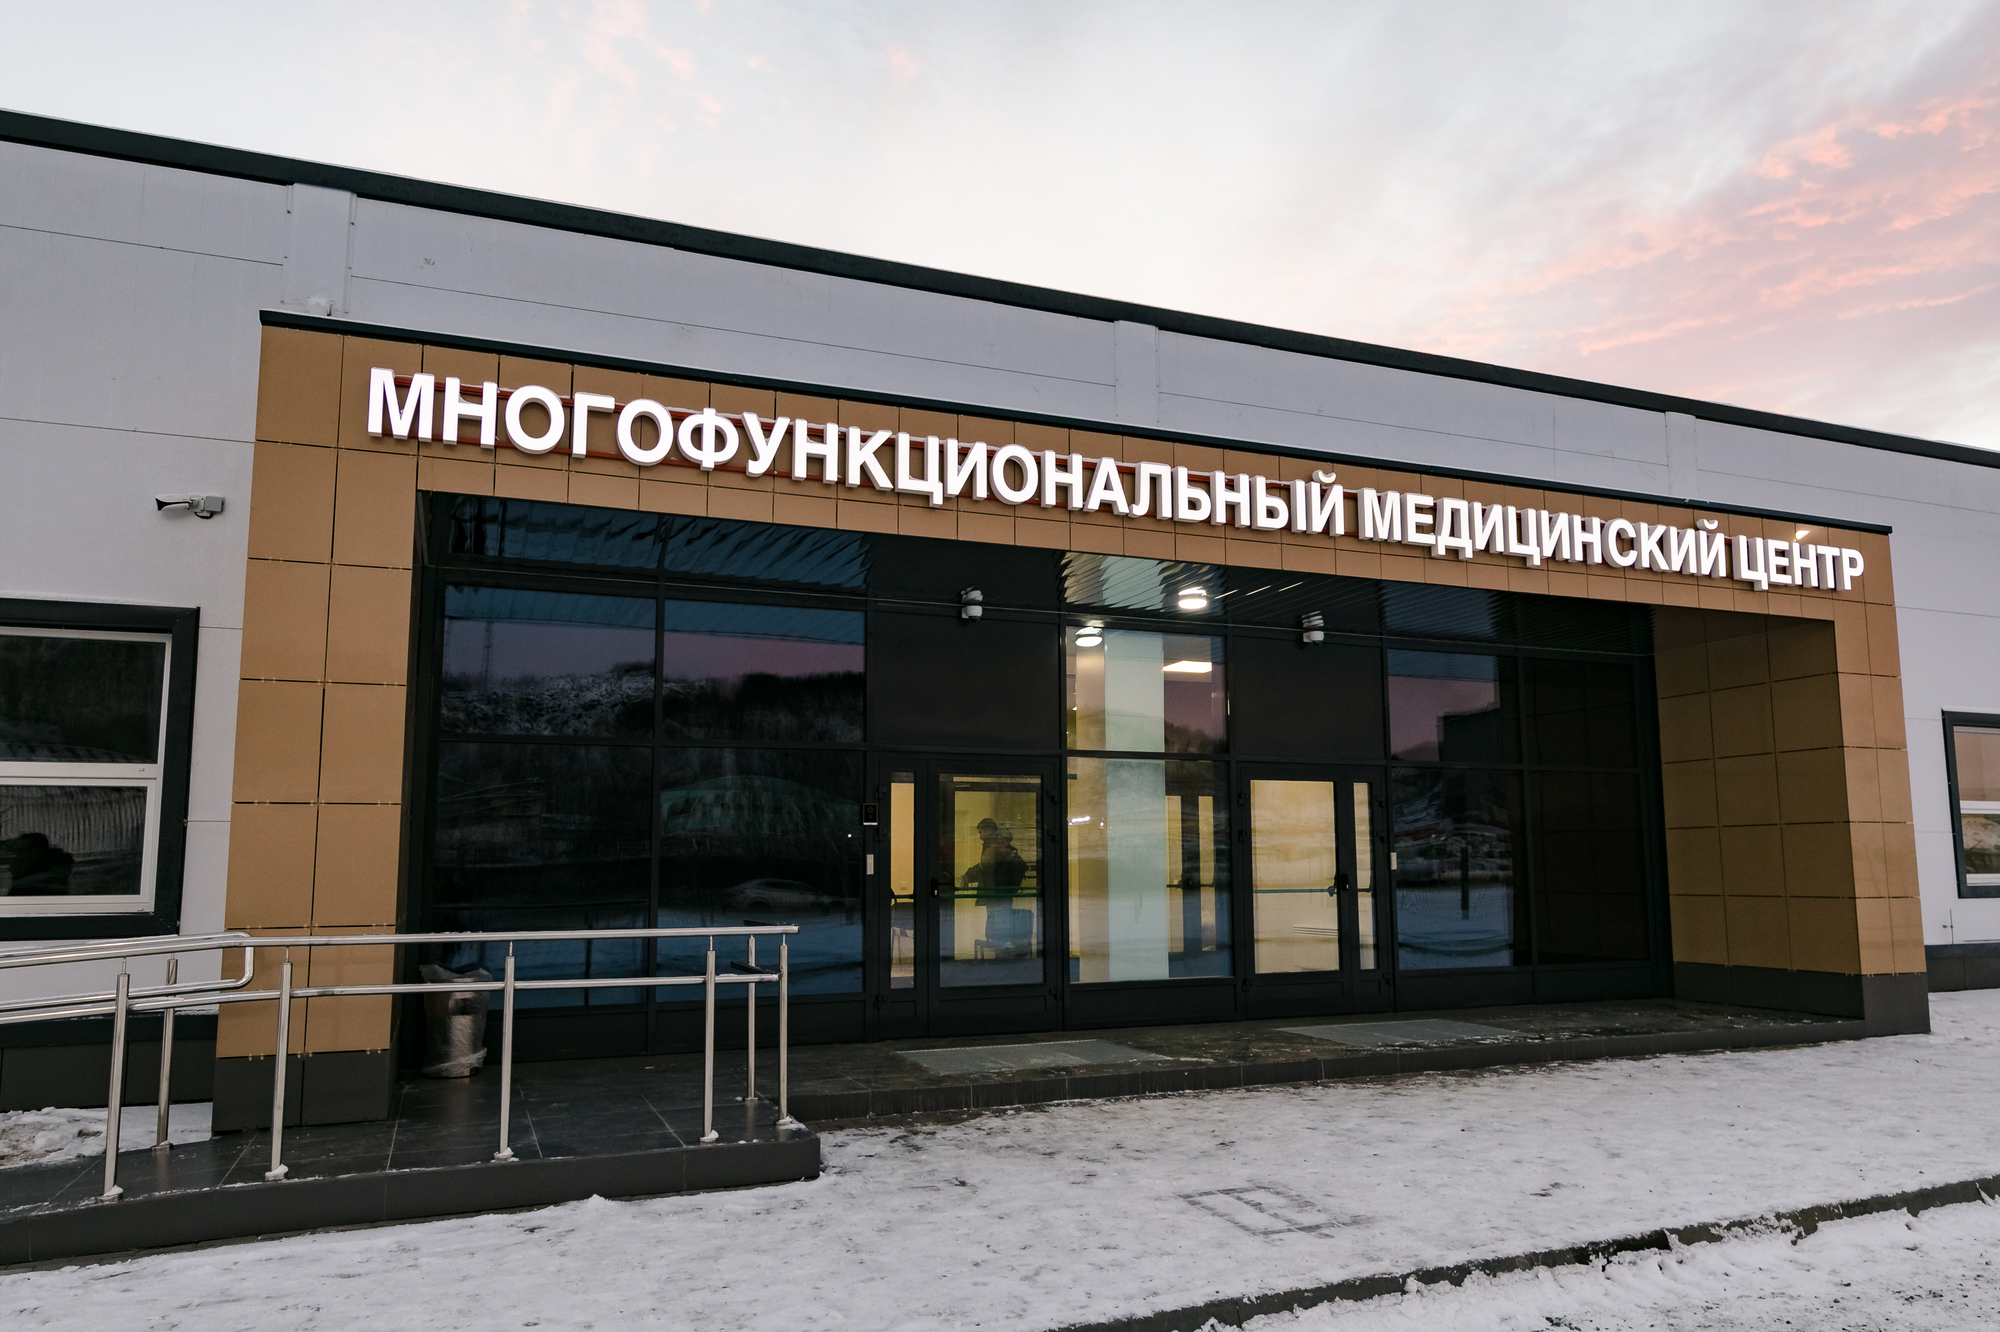 Многофункциональный медицинский центр на территории 1469 военно-морского клинического госпиталя г. Североморск